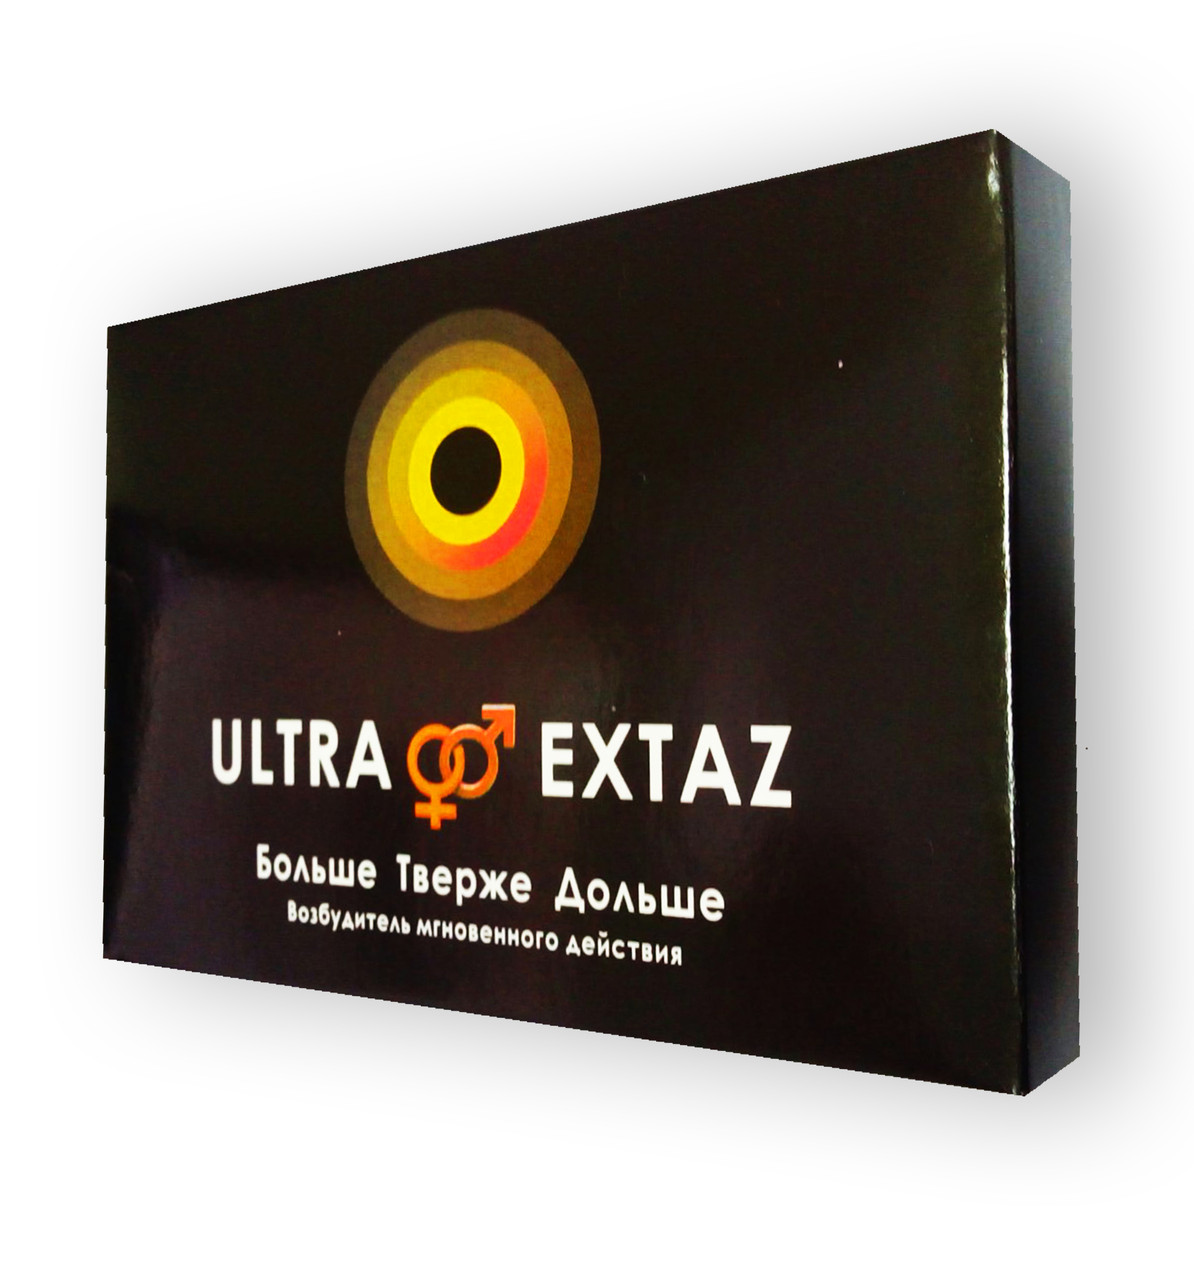 

Ultra Extaz - Возбудитель мгновенного действия (Ультра Экстаз)